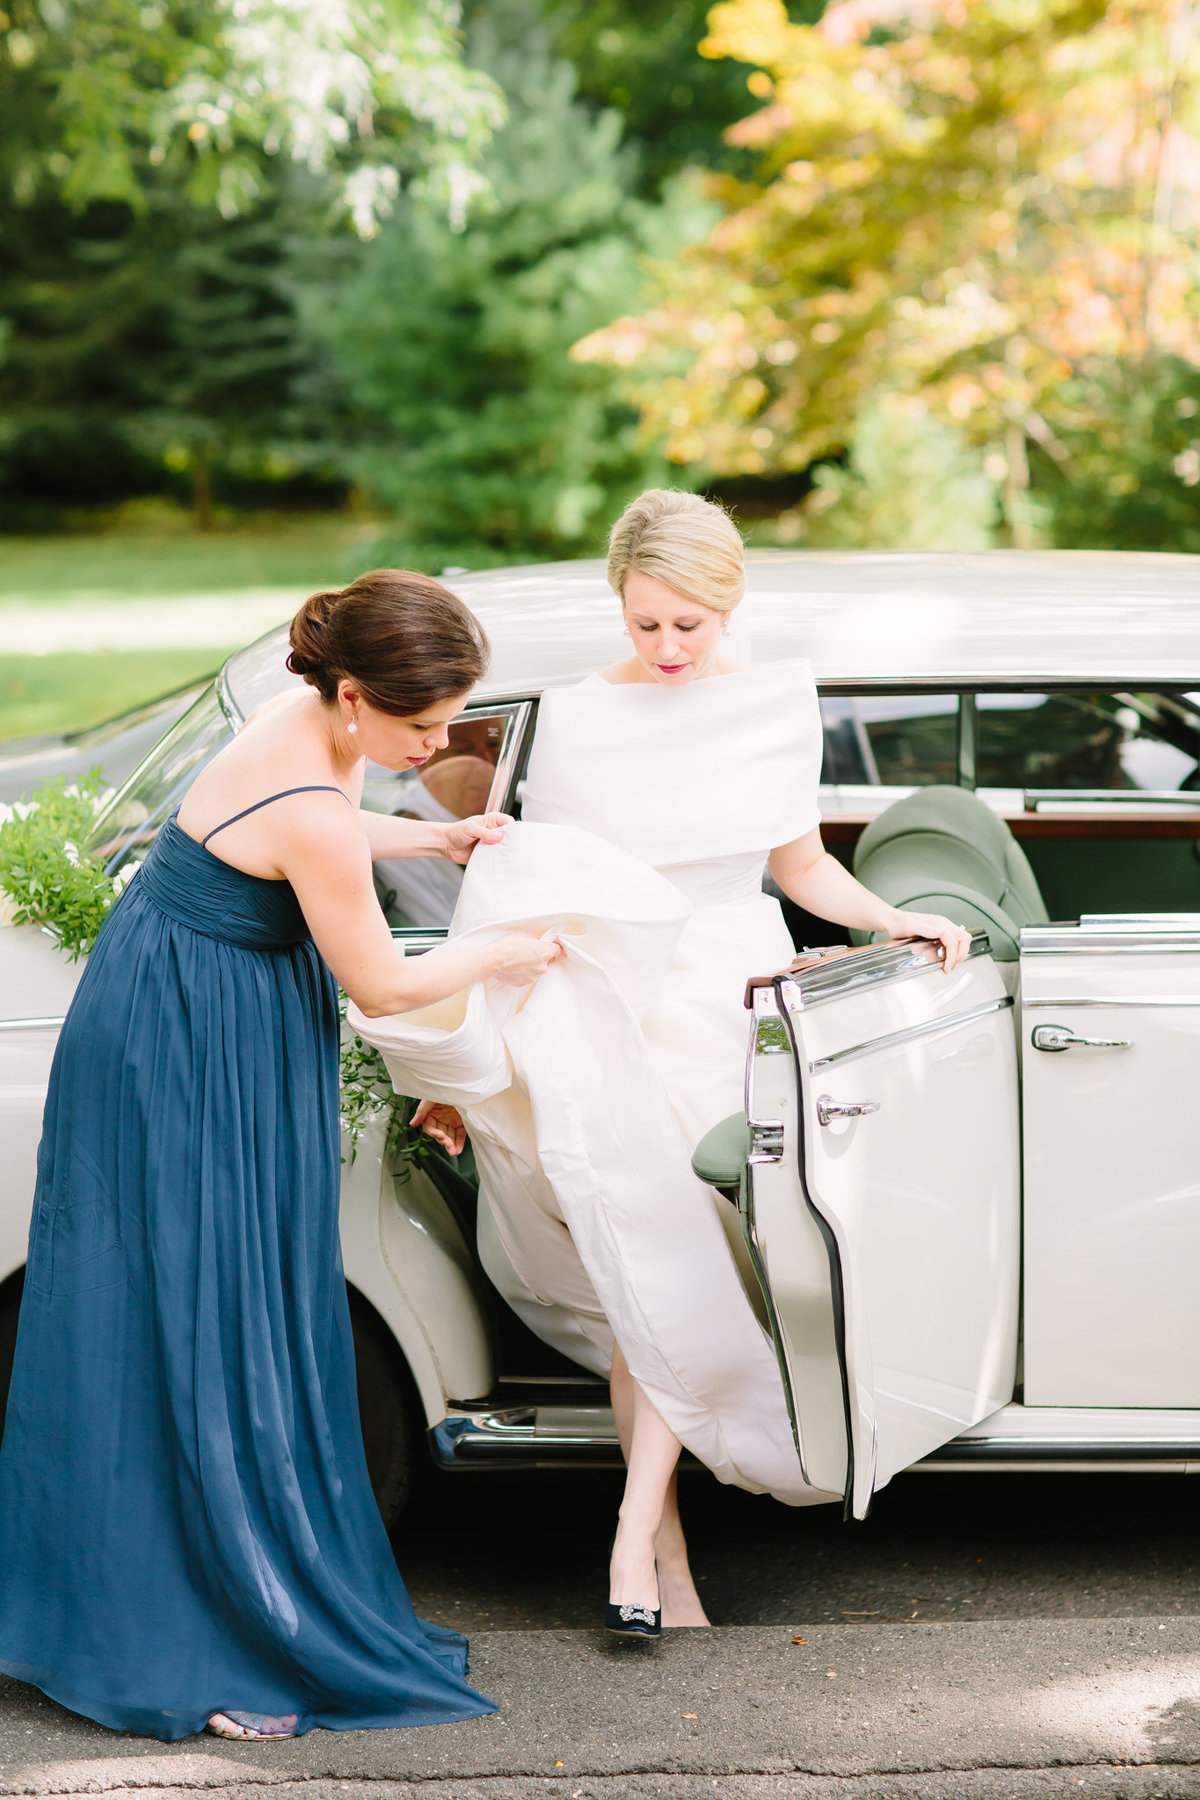 Bride exiting vintage car